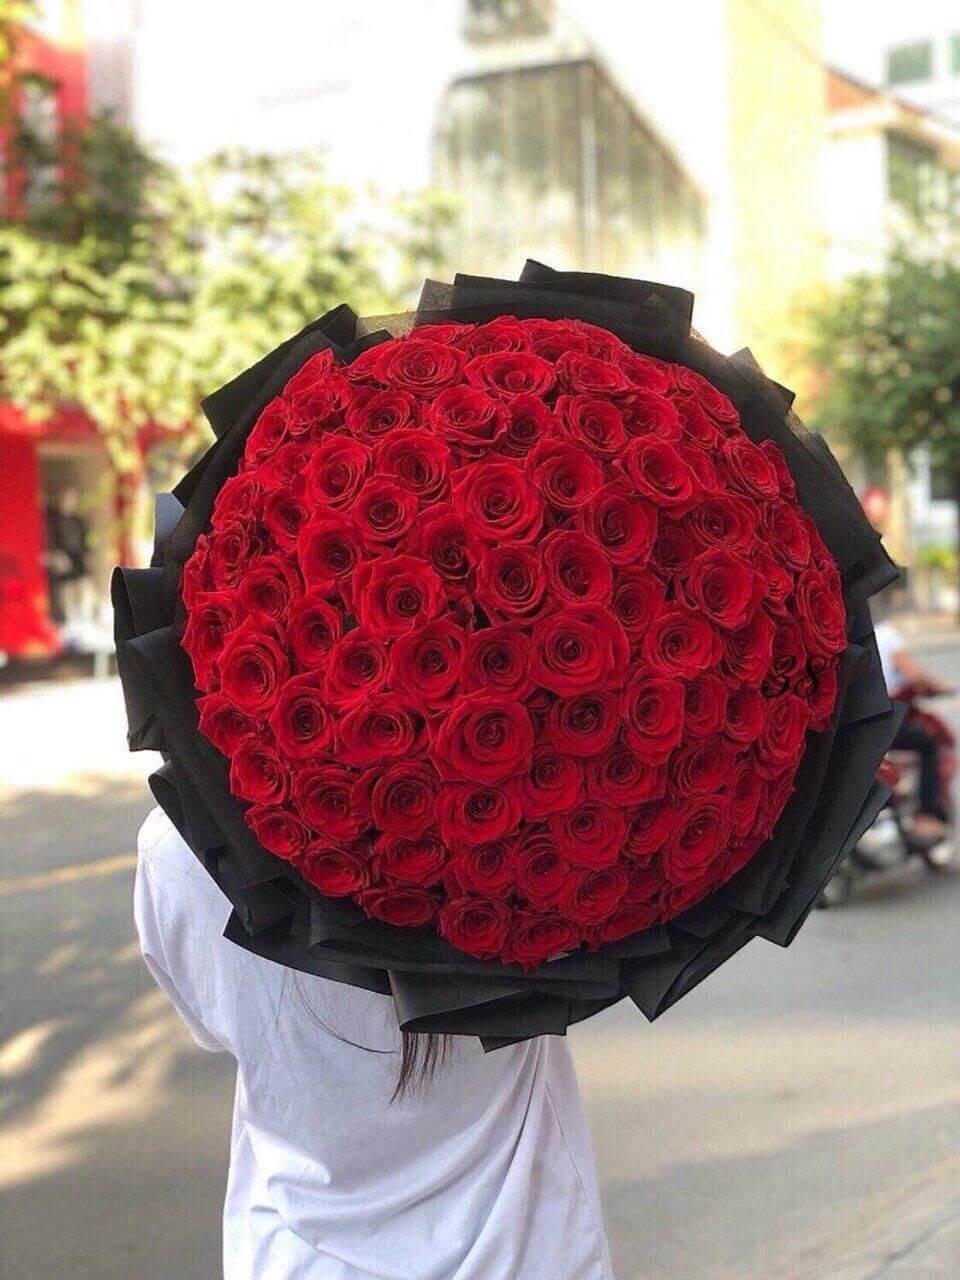 Hoa hồng là một trong những loài hoa đẹp nhất thế giới